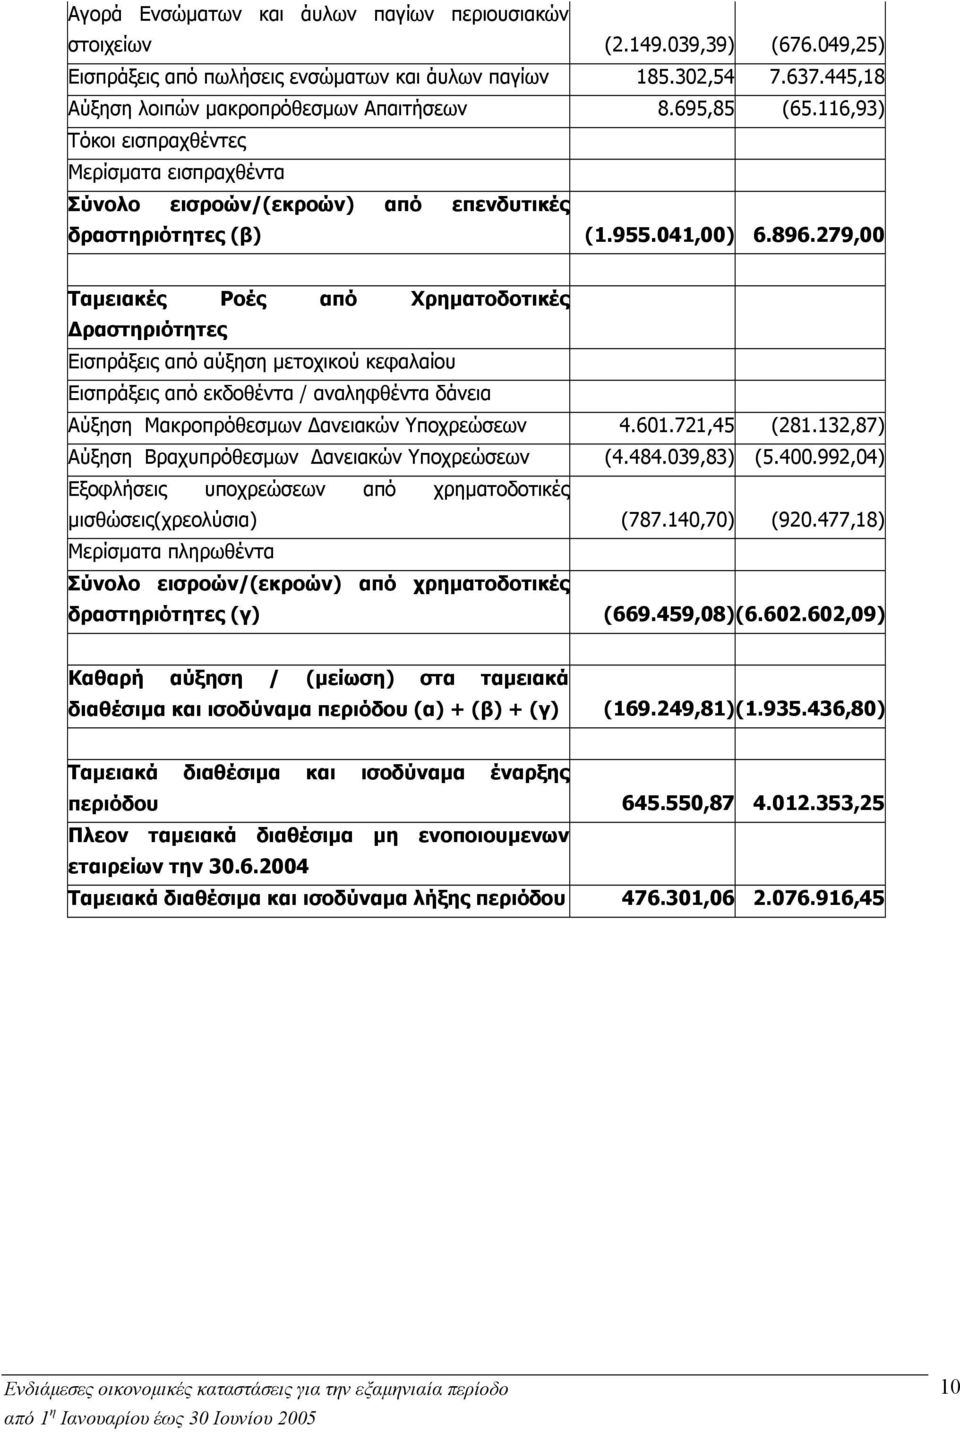 279,00 Ταμειακές Ροές από Χρηματοδοτικές Δραστηριότητες Εισπράξεις από αύξηση μετοχικού κεφαλαίου Εισπράξεις από εκδοθέντα / αναληφθέντα δάνεια Aύξηση Μακροπρόθεσμων Δανειακών Υποχρεώσεων 4.601.